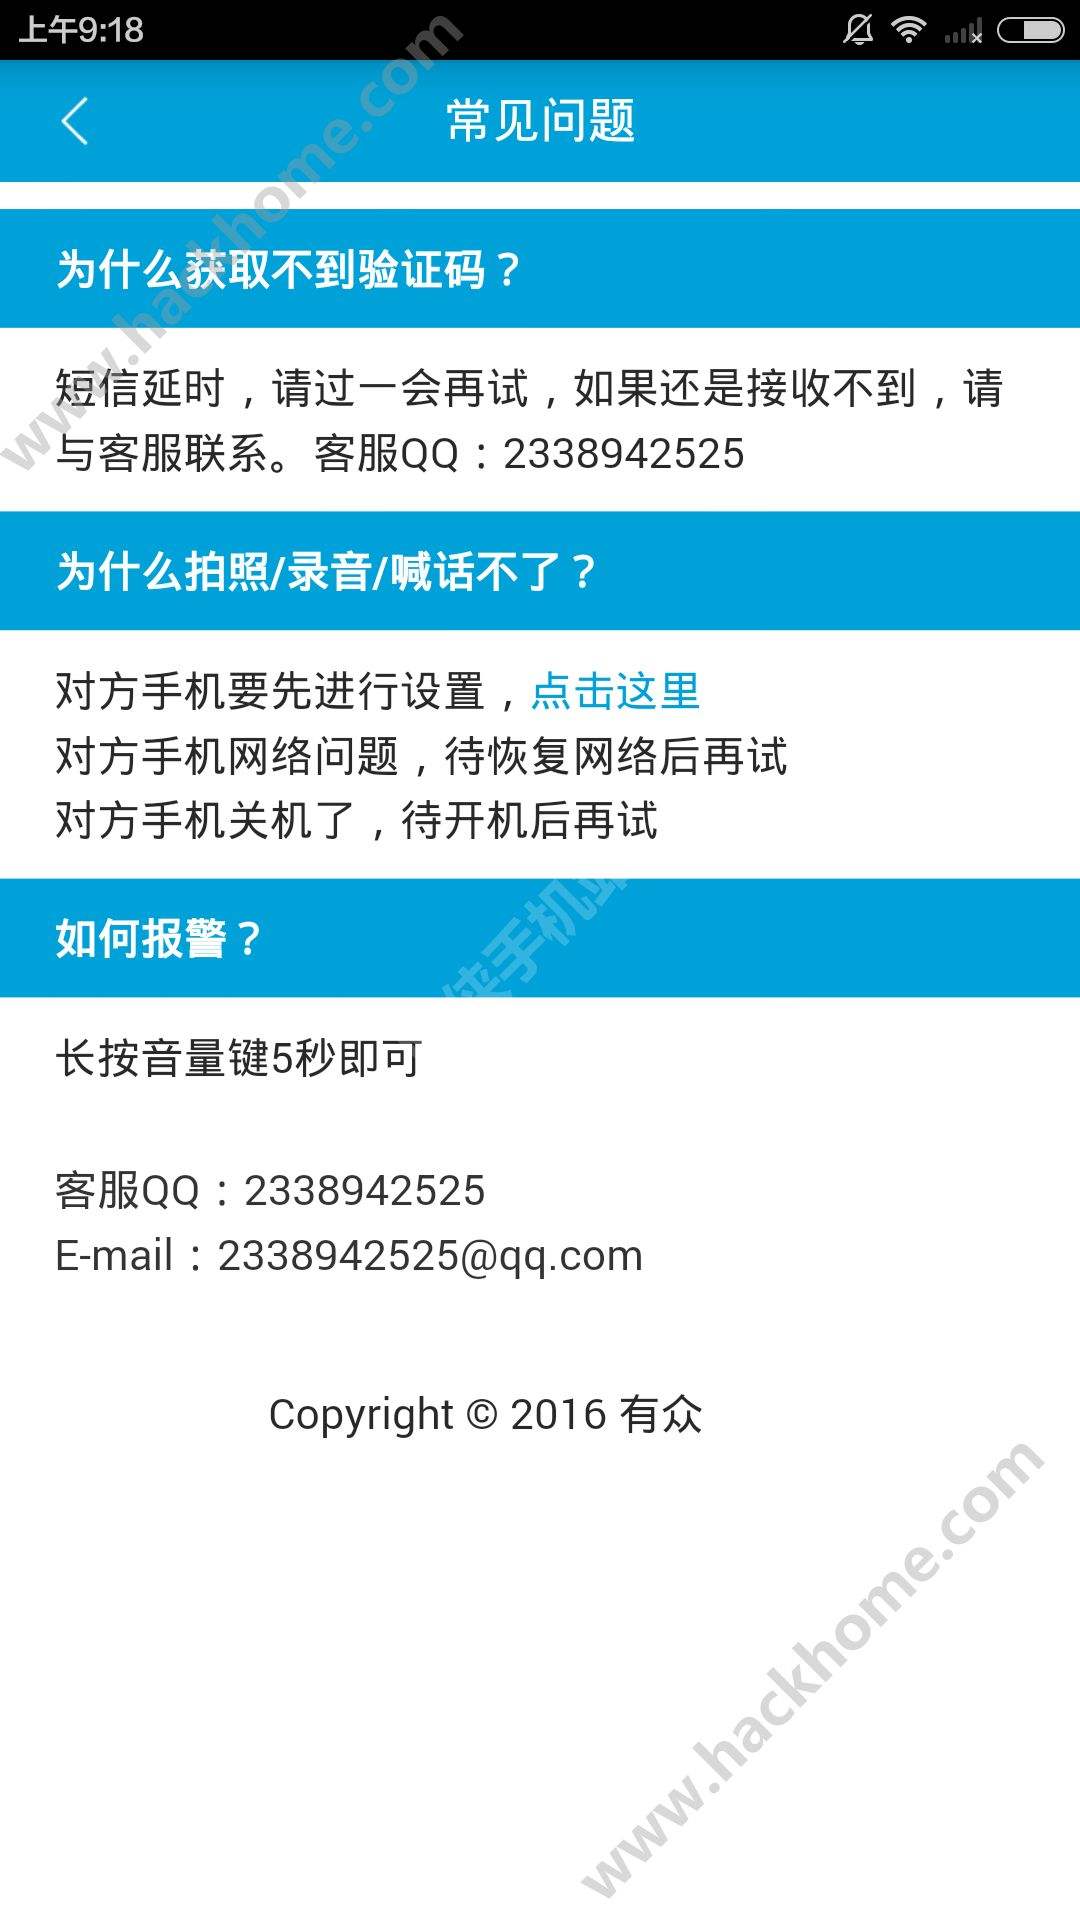 [移动收不到国外短信验证码]中国移动收不到国外短信验证码